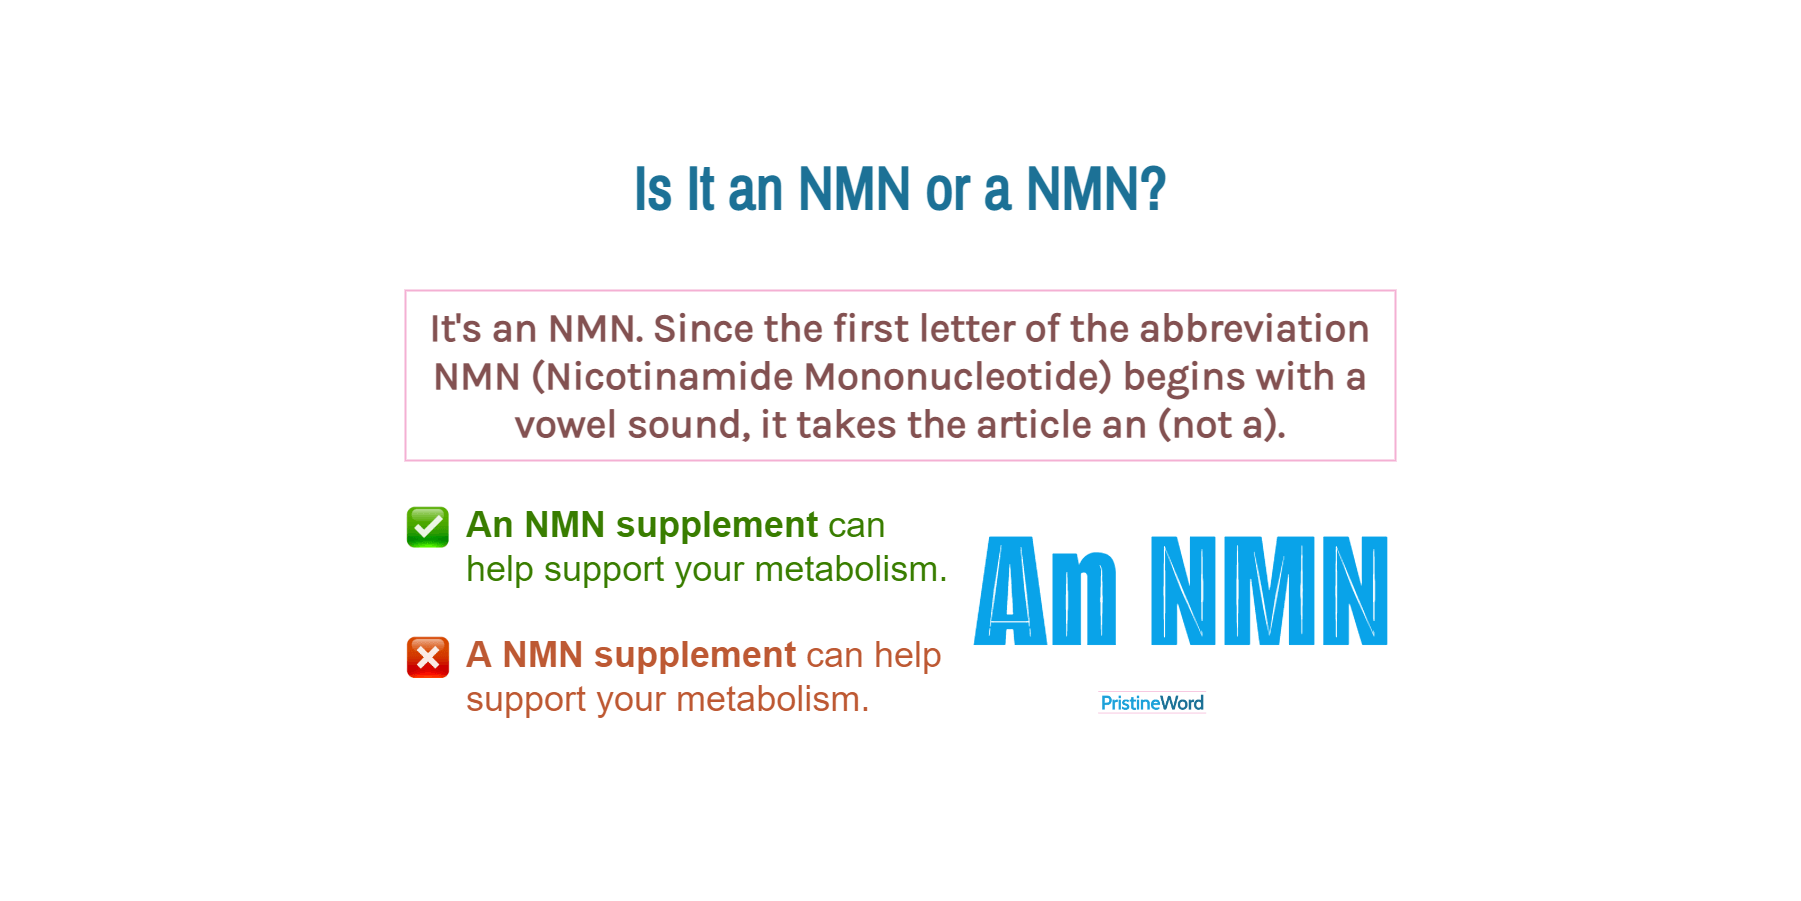 Is It an NMN or a NMN?